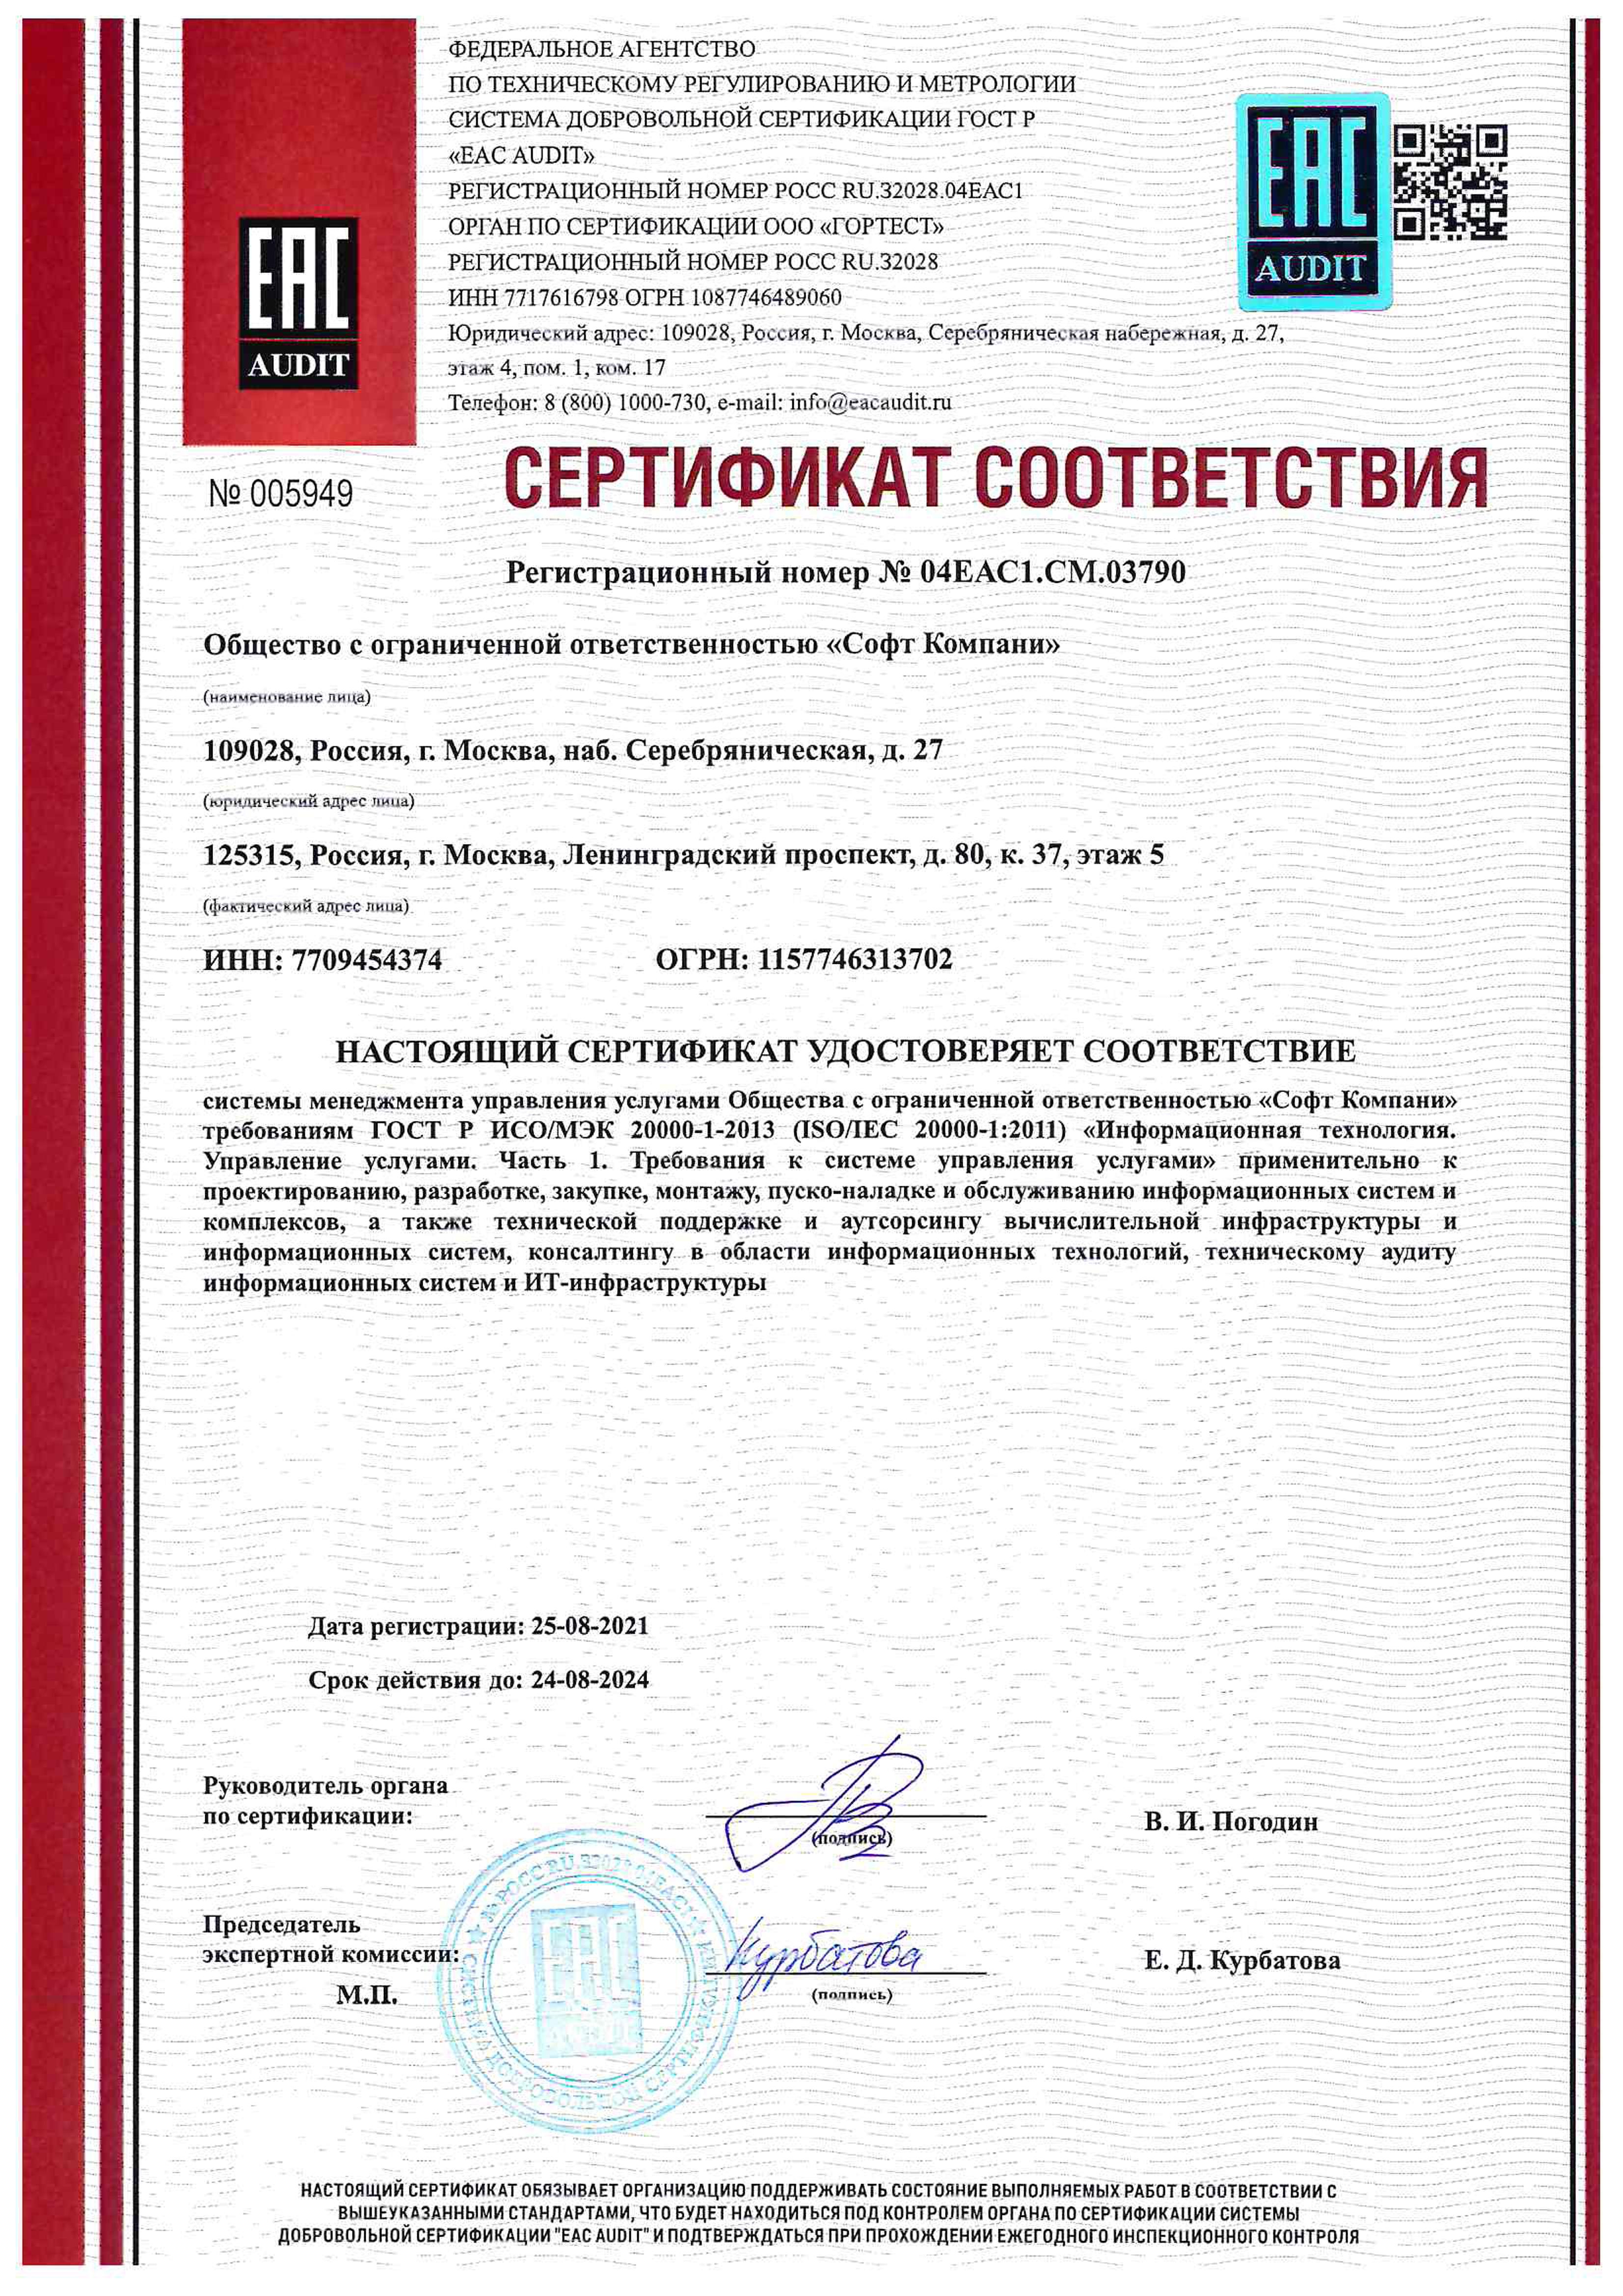 Сертификат соответствия системы менеджмента управления услугами ГОСТ Р ИСО/МЭК 20000-1-2013 (ISO/IEC 20000-1:2011)